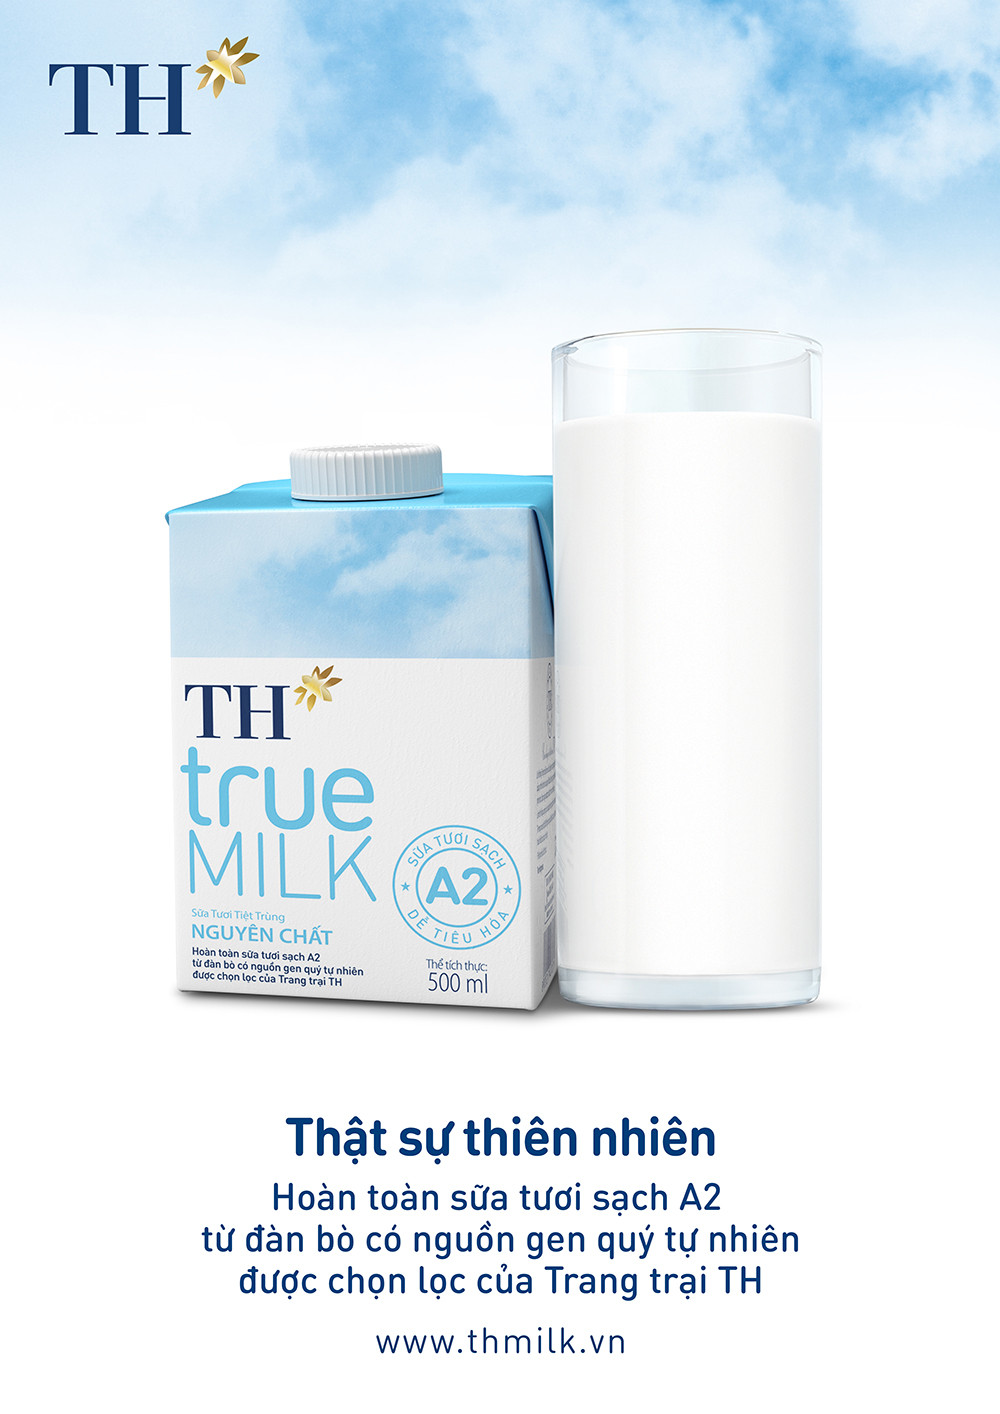 Sữa tươi tiệt trùng TH true MILK A2 – them một lựa chọn sữa tươi tốt cho sức khỏe người tiêu dùng